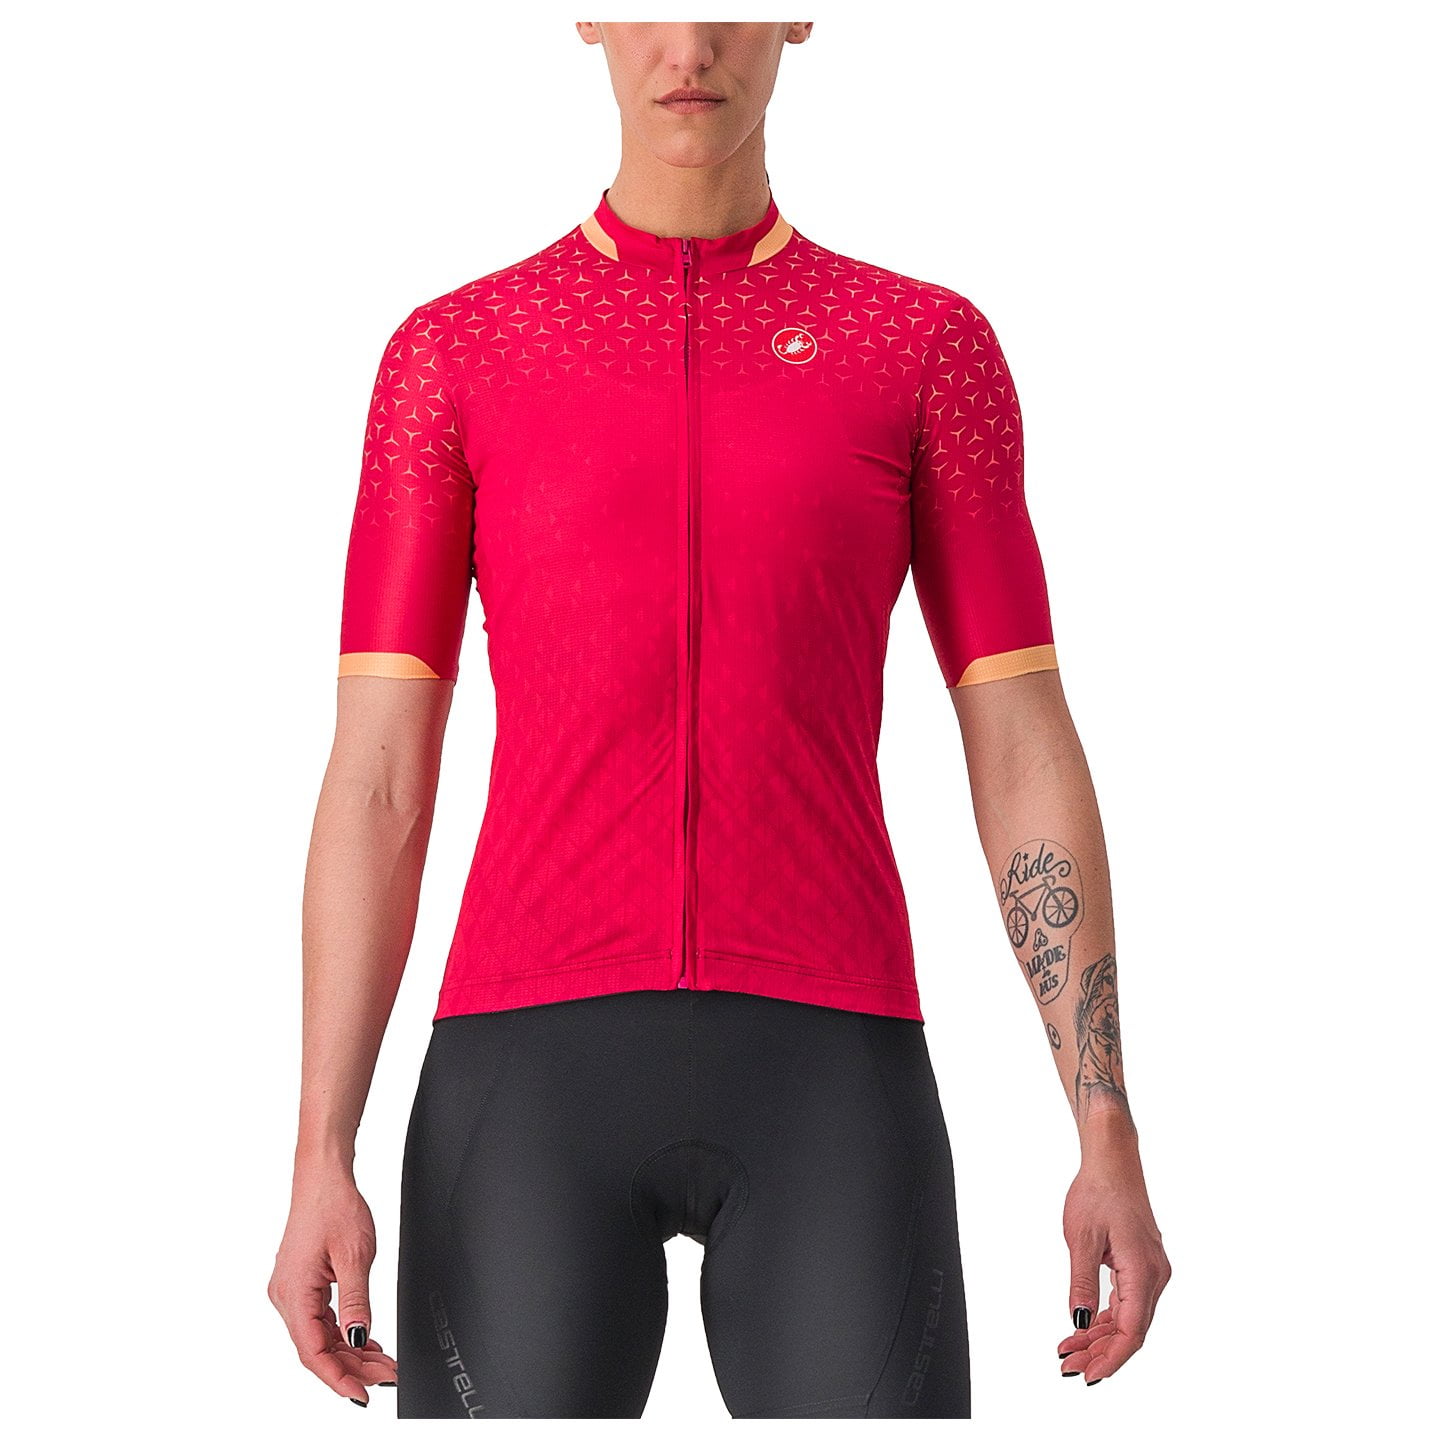 CASTELLI Dolce Women’s Jersey Women’s Short Sleeve Jersey, size XL, Cycle jersey, Bike gear